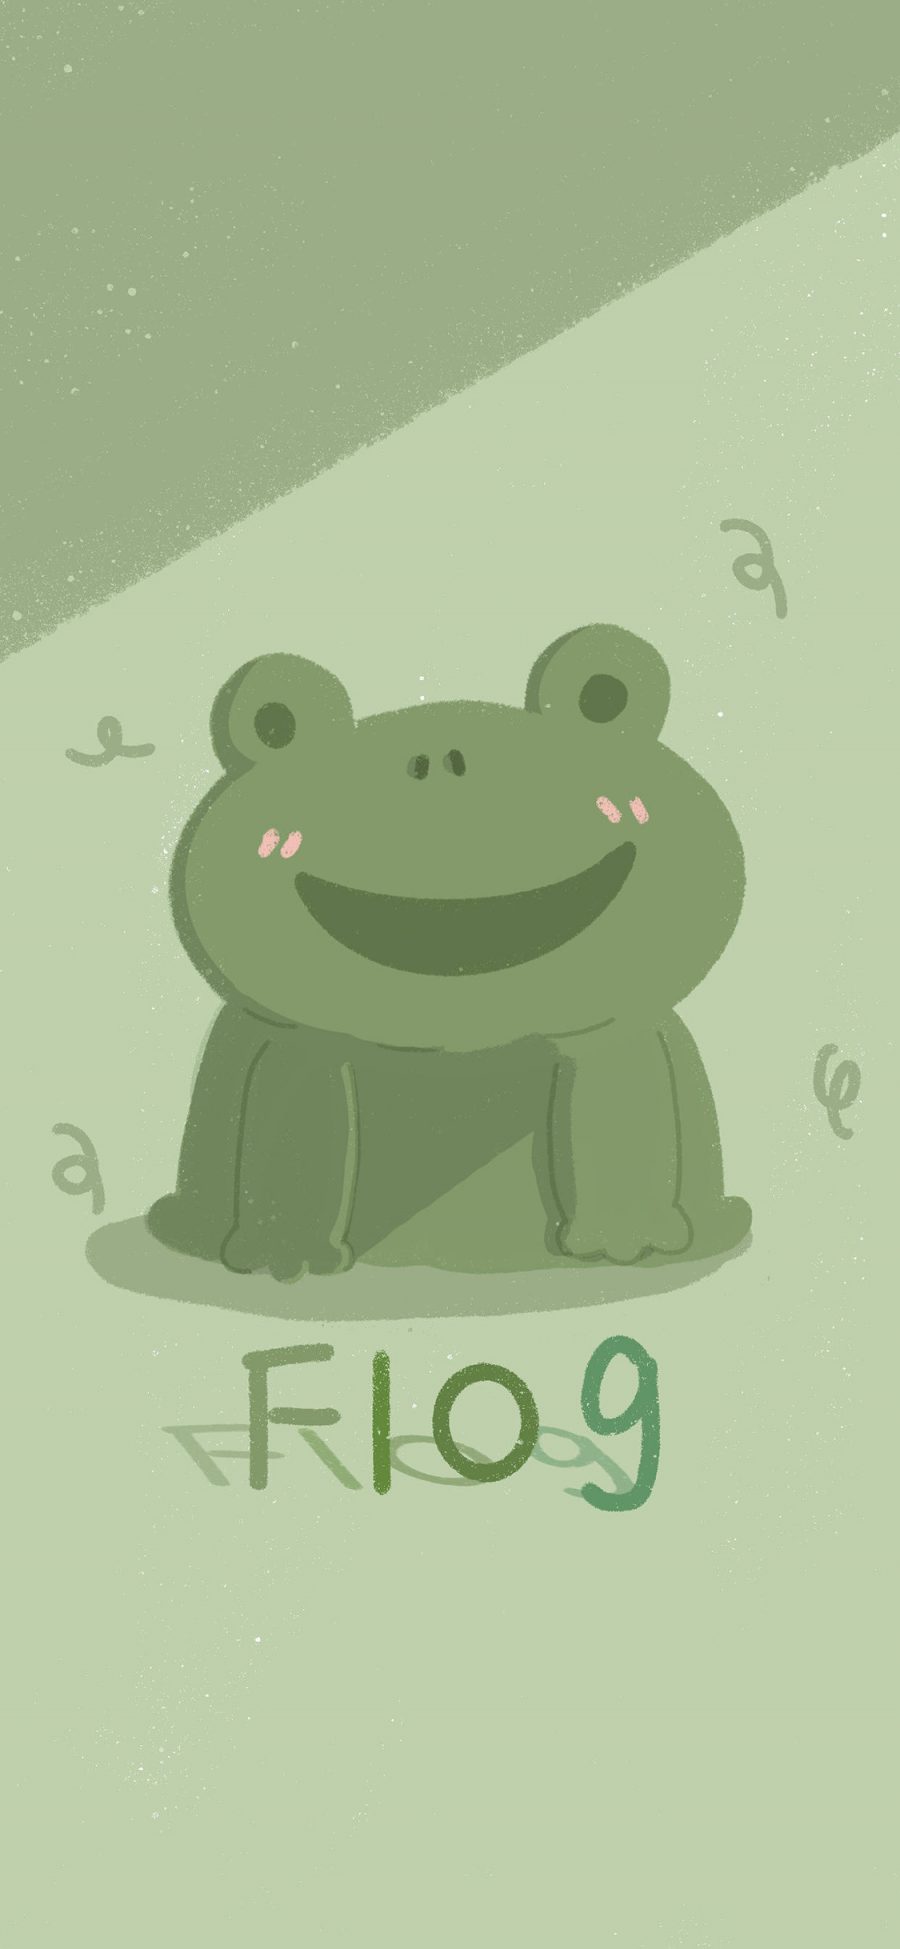 [2436×1125]卡通 青蛙 flog 可爱 苹果手机动漫壁纸图片